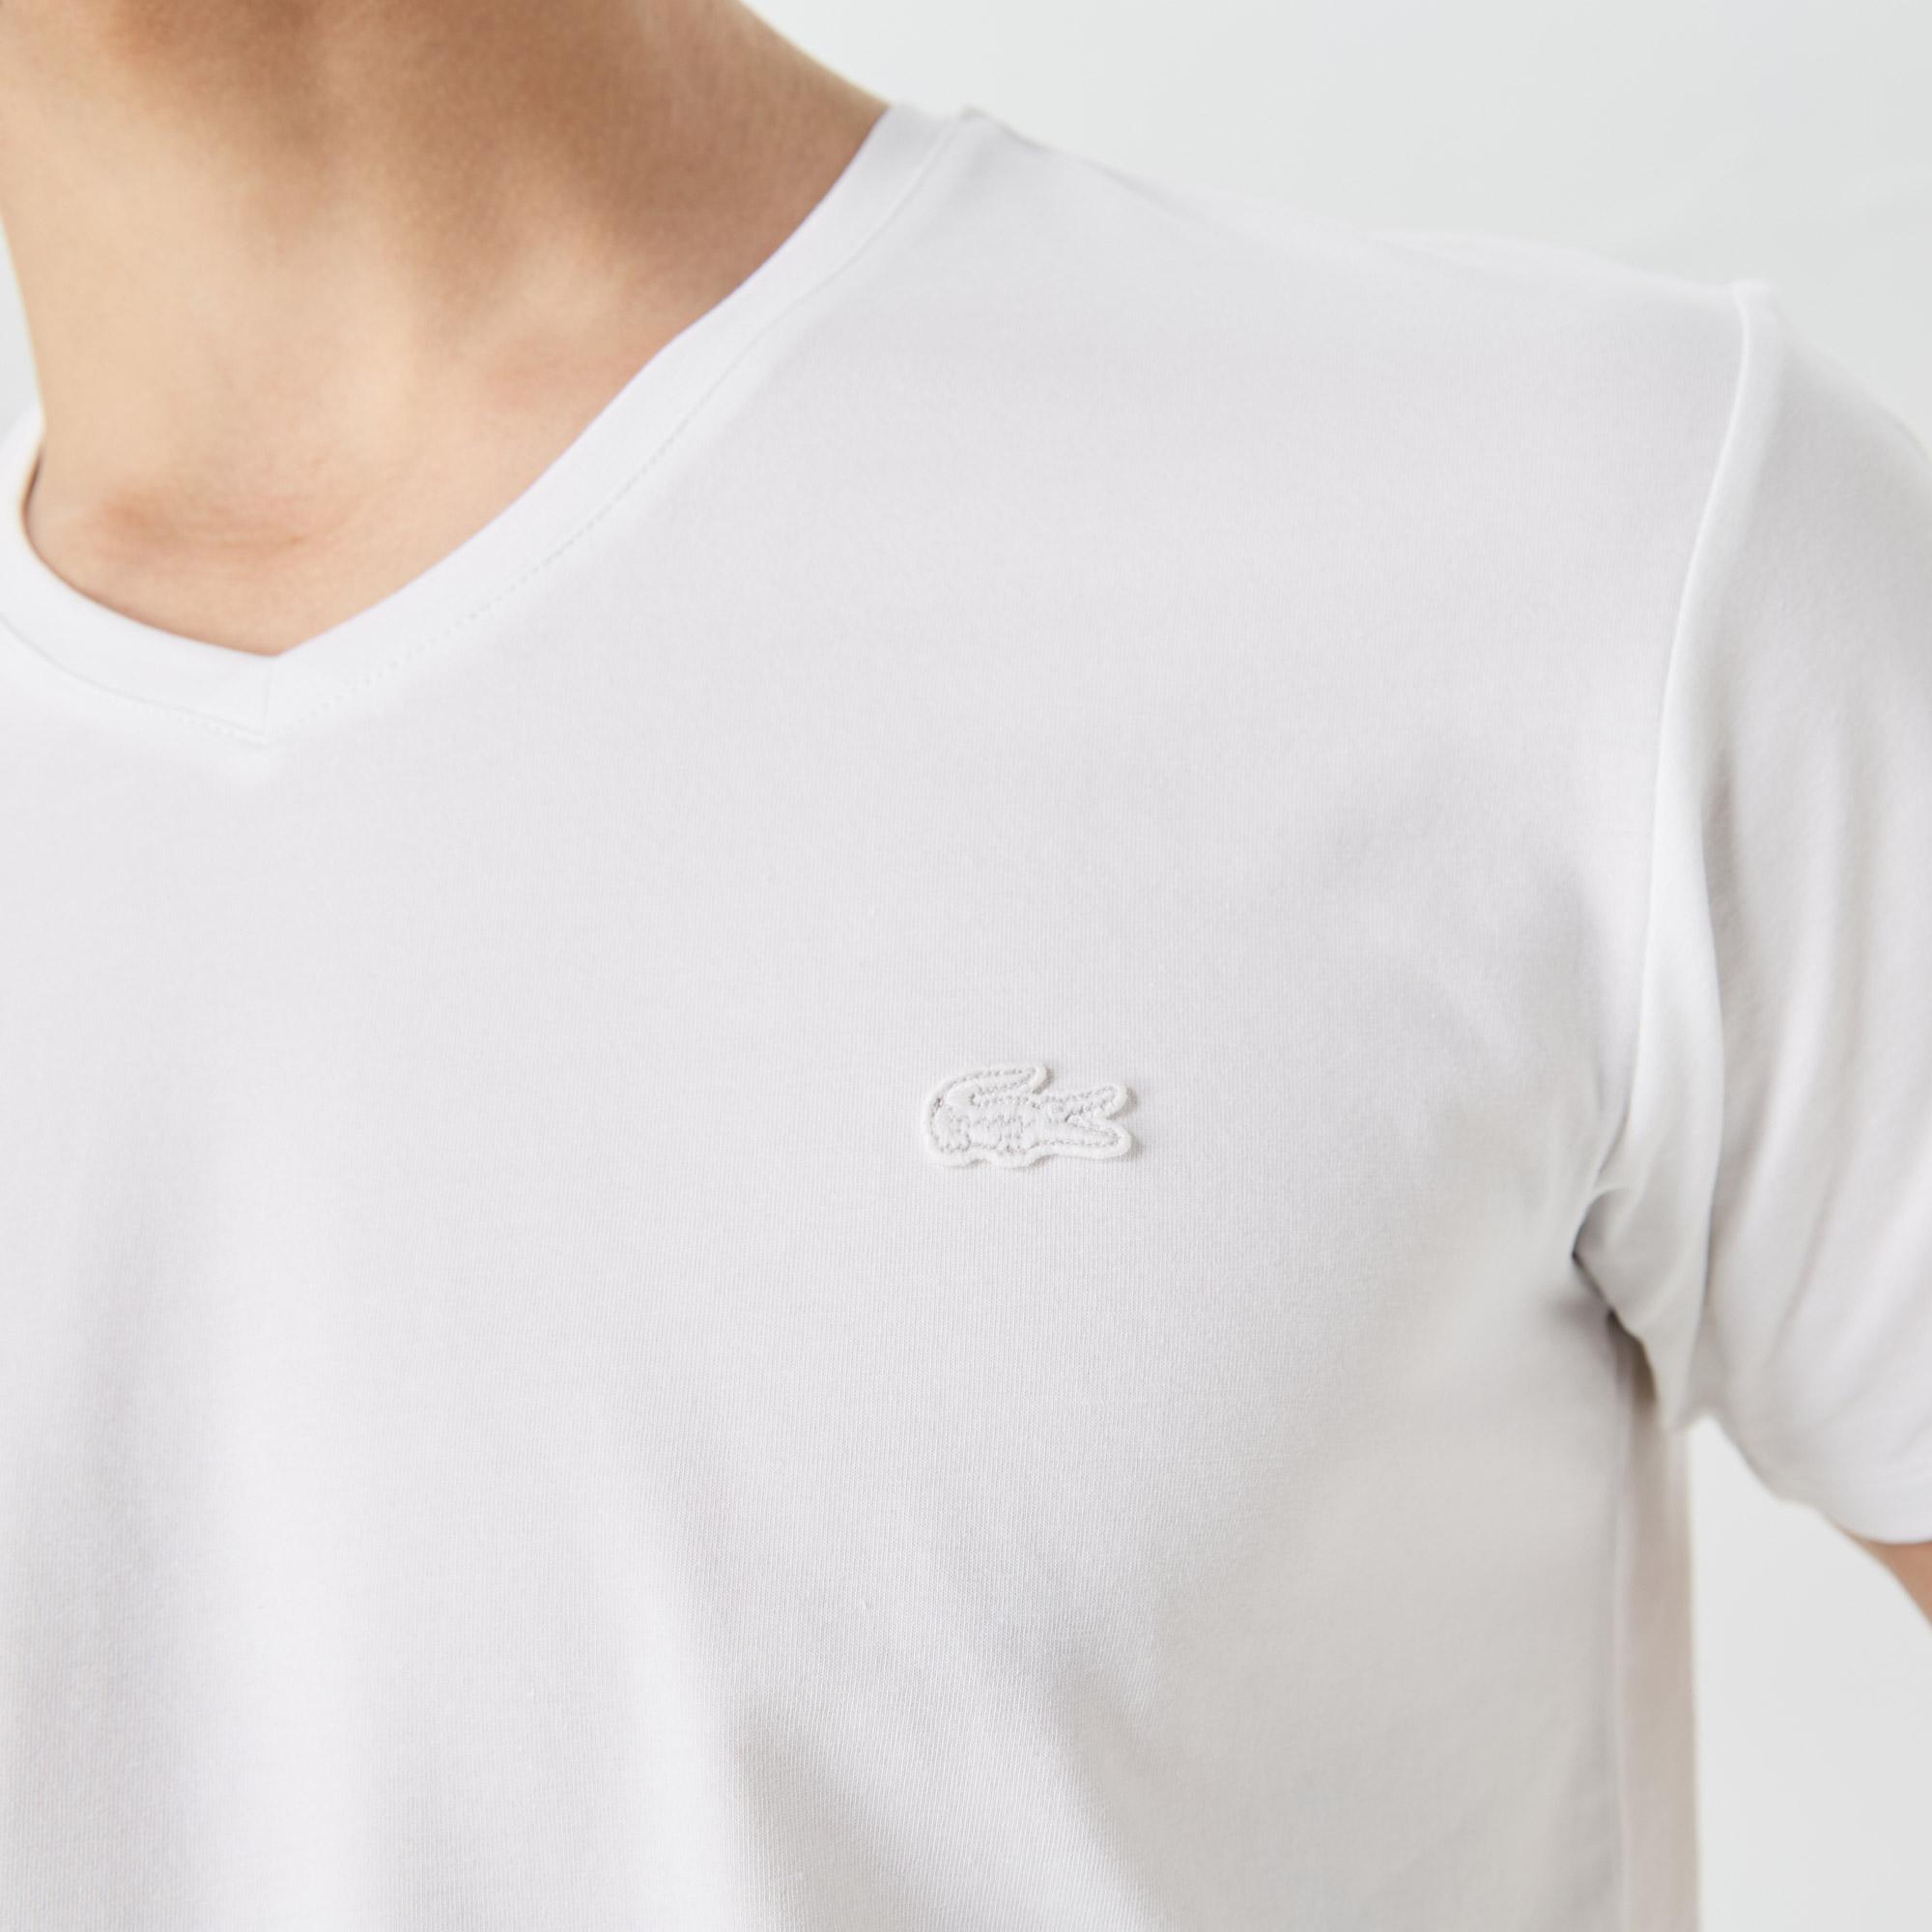 Lacoste Erkek Slim Fit V Yaka Beyaz T-Shirt. 6